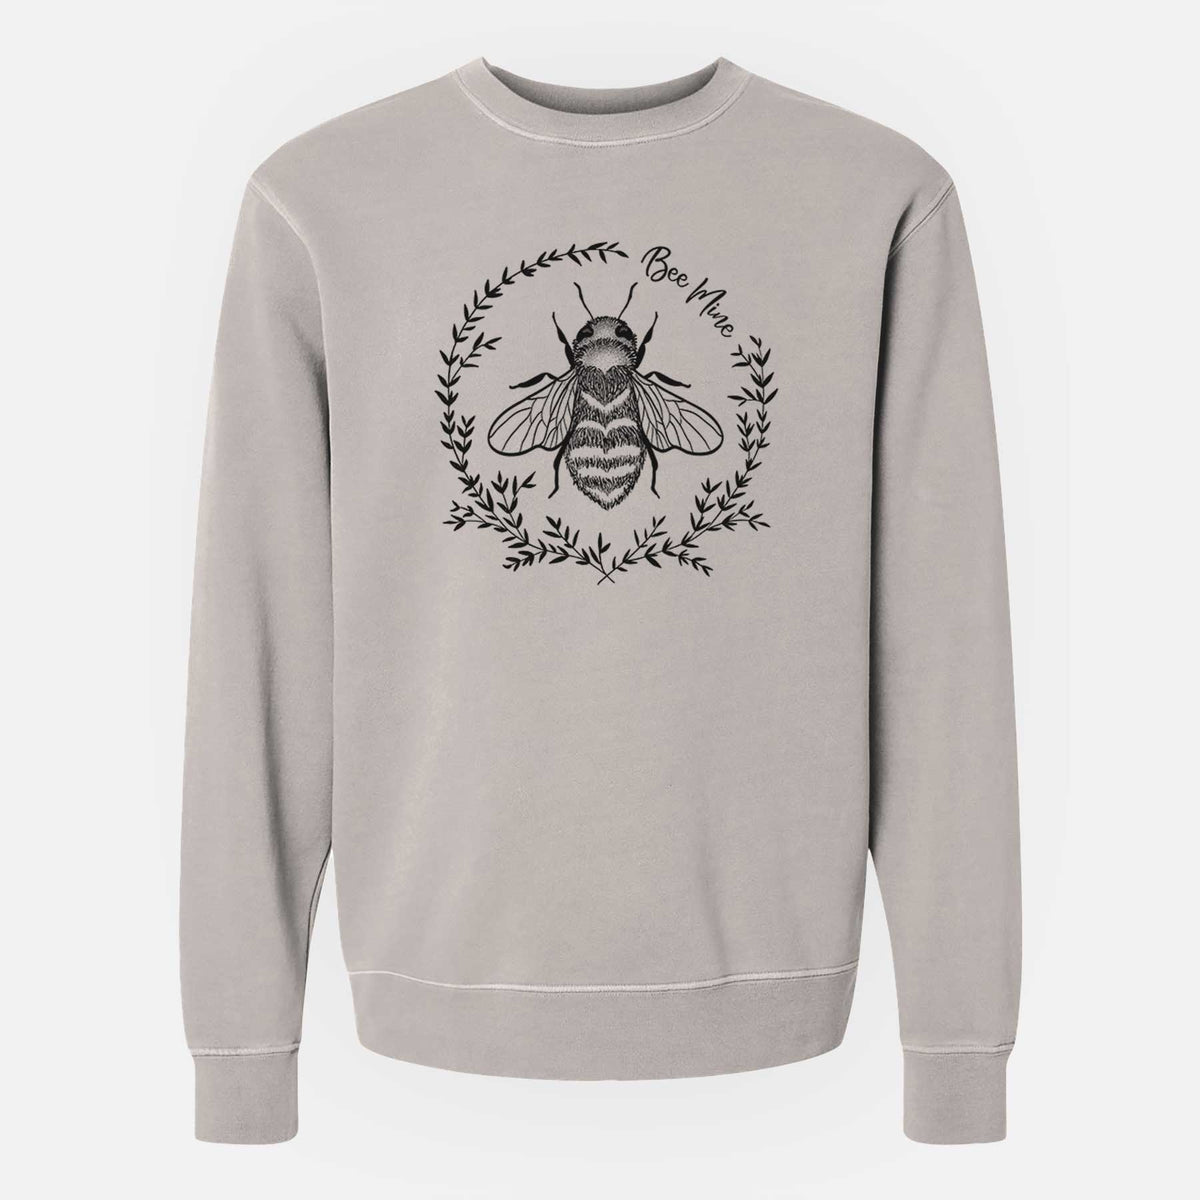 Bee Mine - Unisex Pigment Dyed Crew Sweatshirt